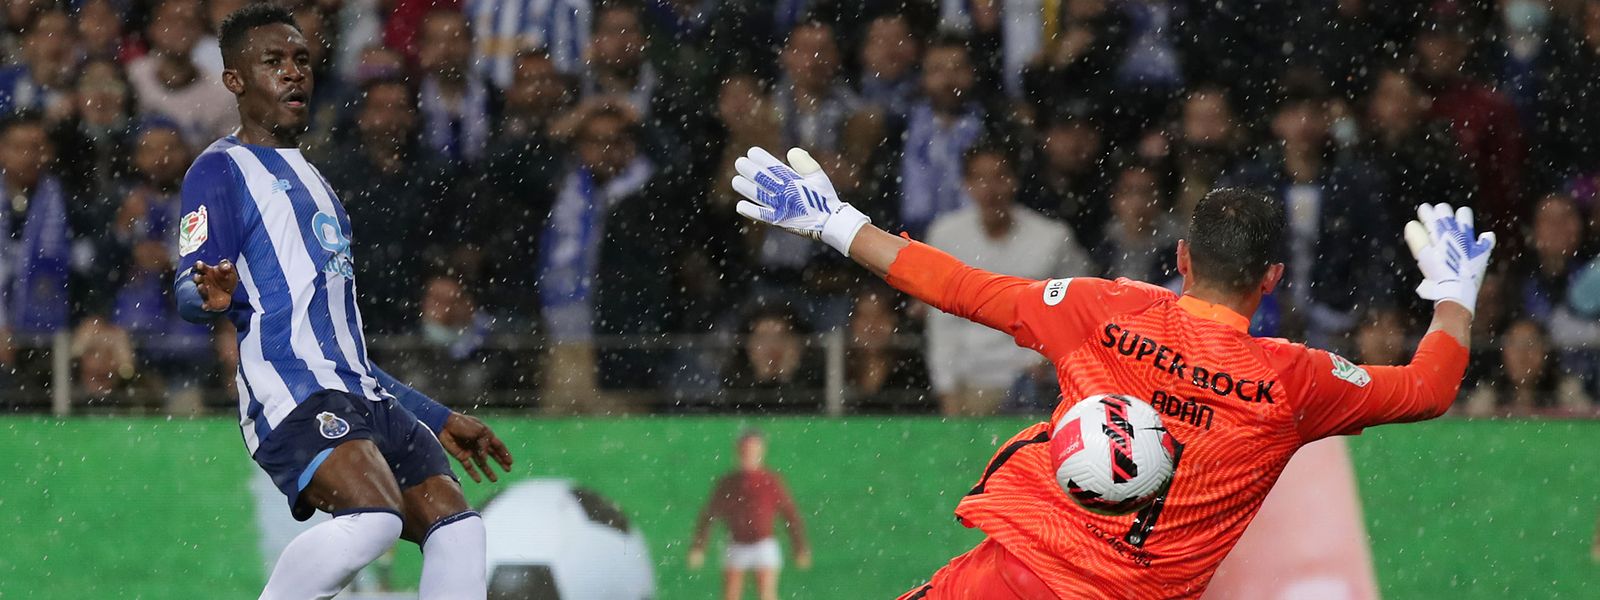 Sanusi do FC Porto em ação contra o guarda-redes Adán, do Sporting, nas meias-finais da Taça de Portugal, no estádio do Dragão, a 21 de abril.